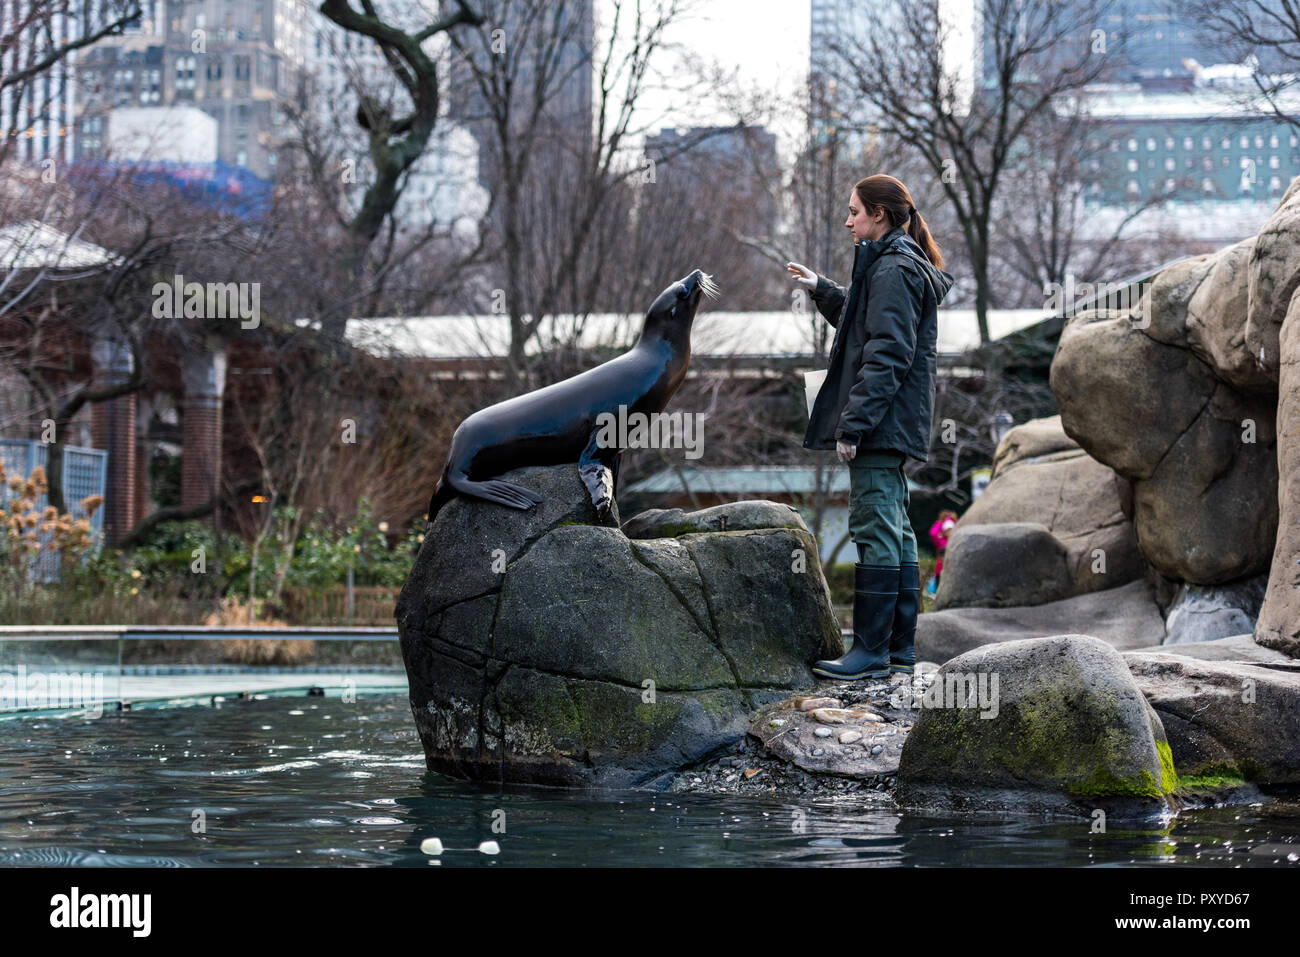 Lion de mer l'alimentation et la formation s'inscrit dans le programme d'enrichissement des animaux au zoo de Central Park à New York. Banque D'Images